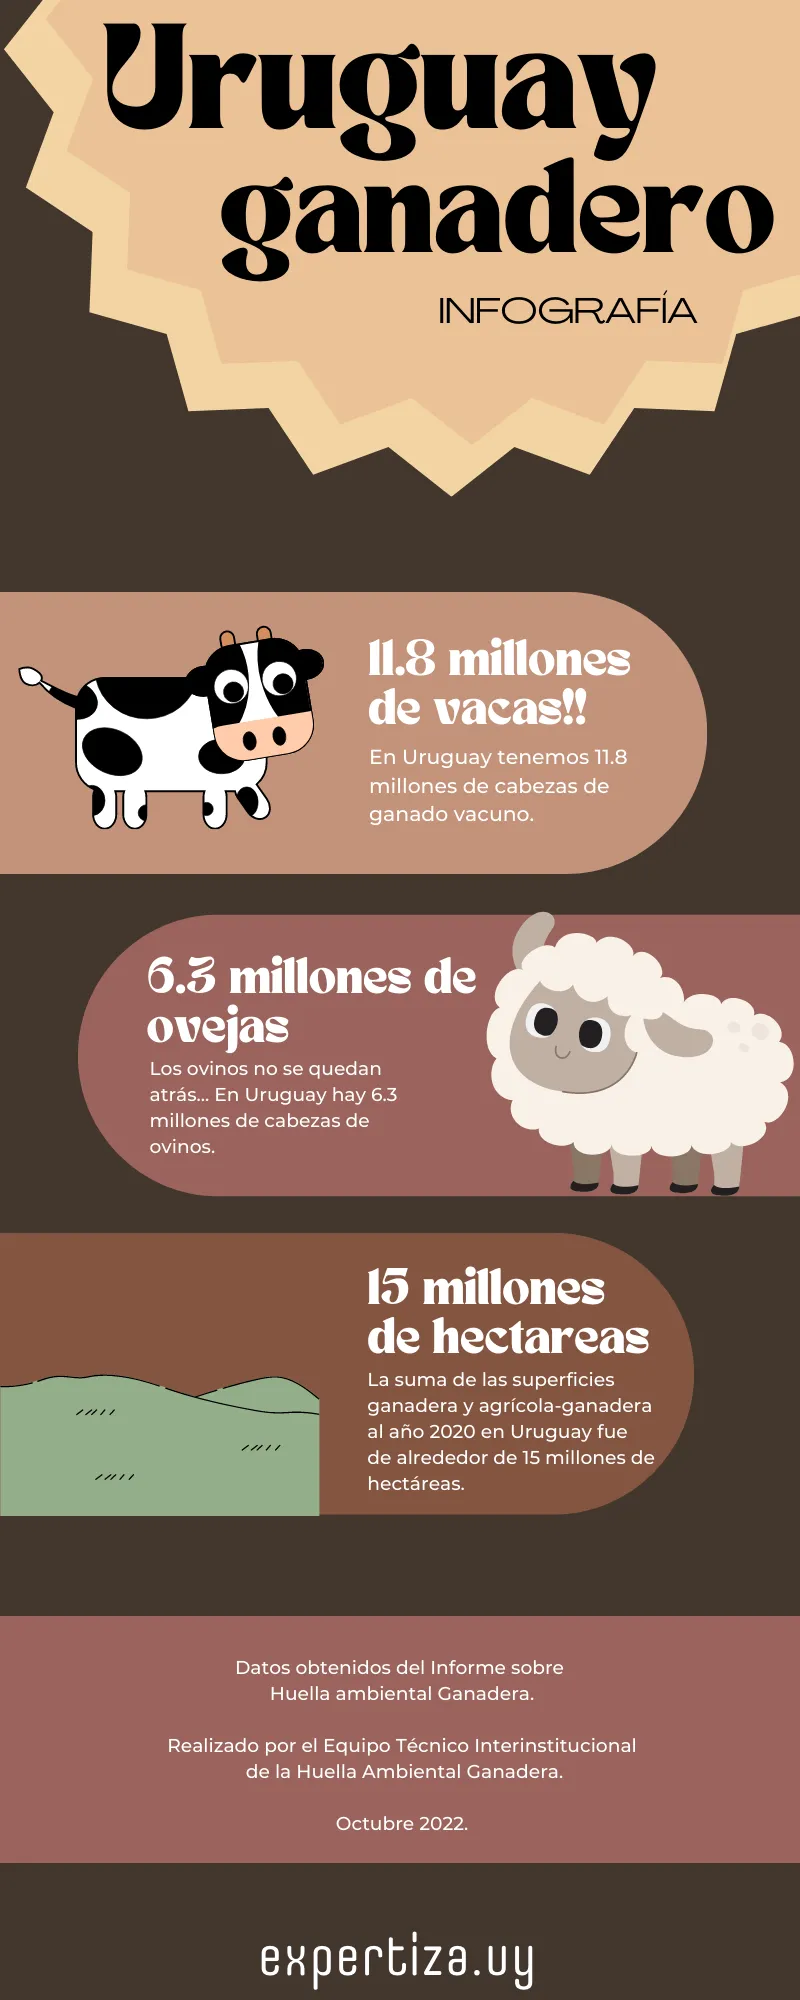 Infografía sobre Uruguay ganadero.